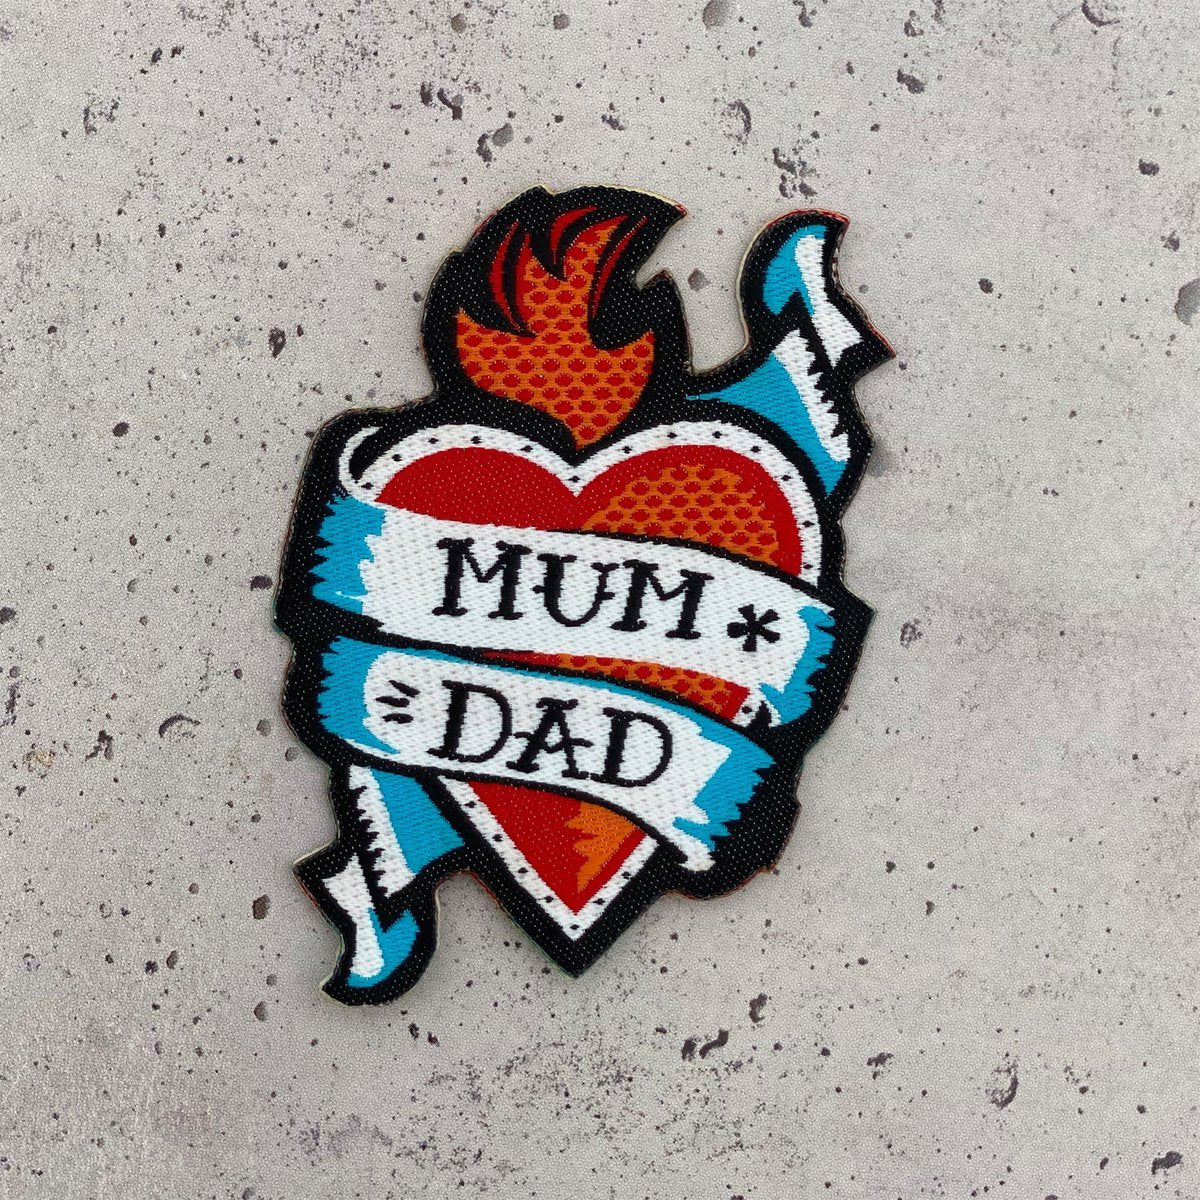 Sticker-Patch "Mum & Dad"